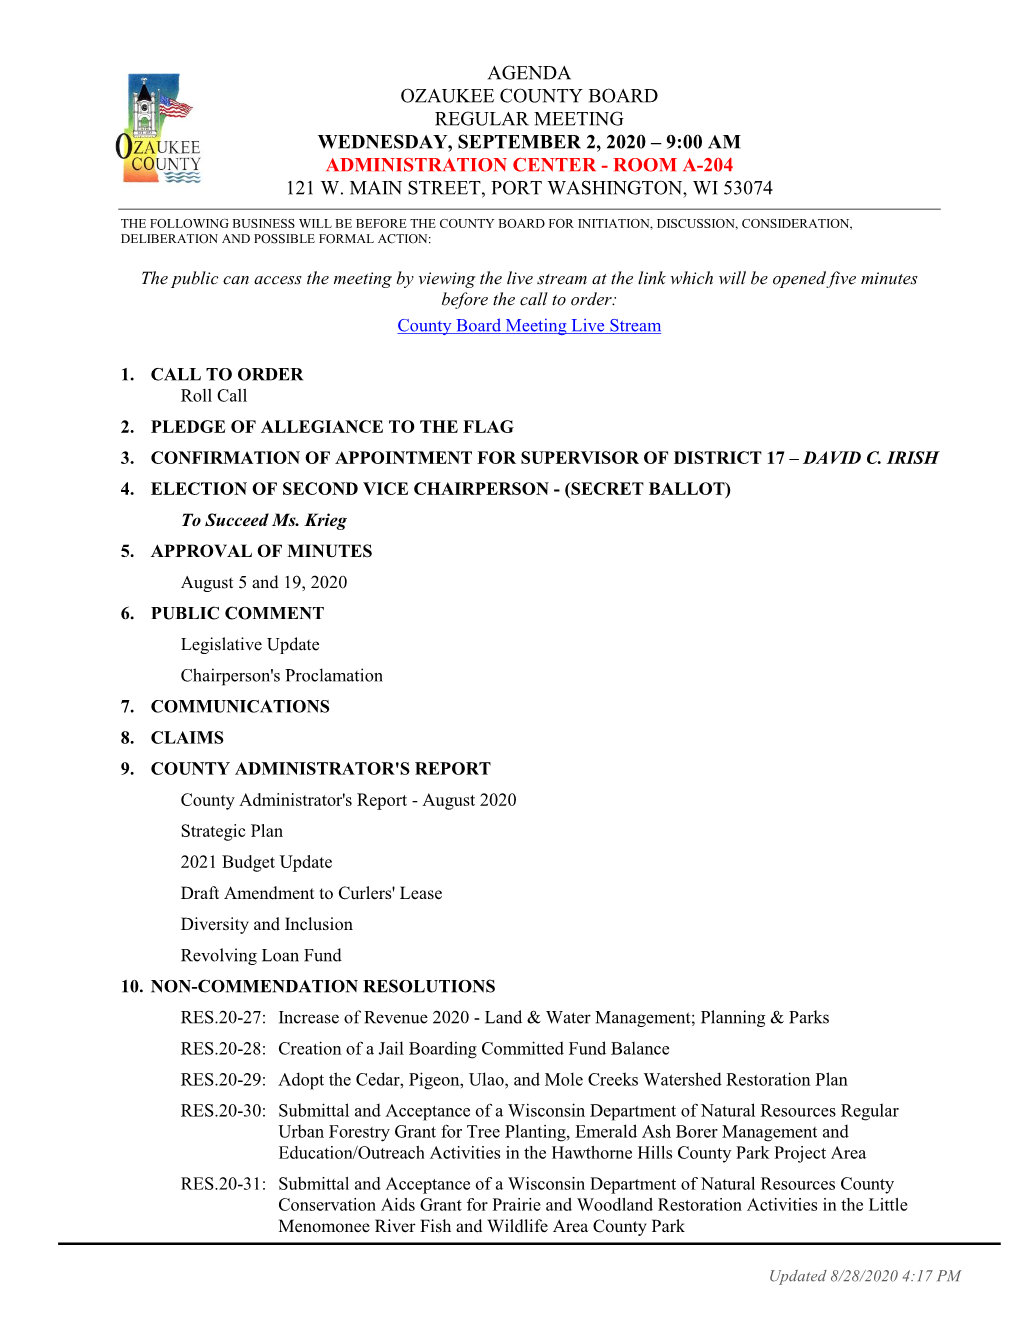 Agenda Ozaukee County Board Regular Meeting Wednesday, September 2, 2020 – 9:00 Am Administration Center - Room A-204 121 W